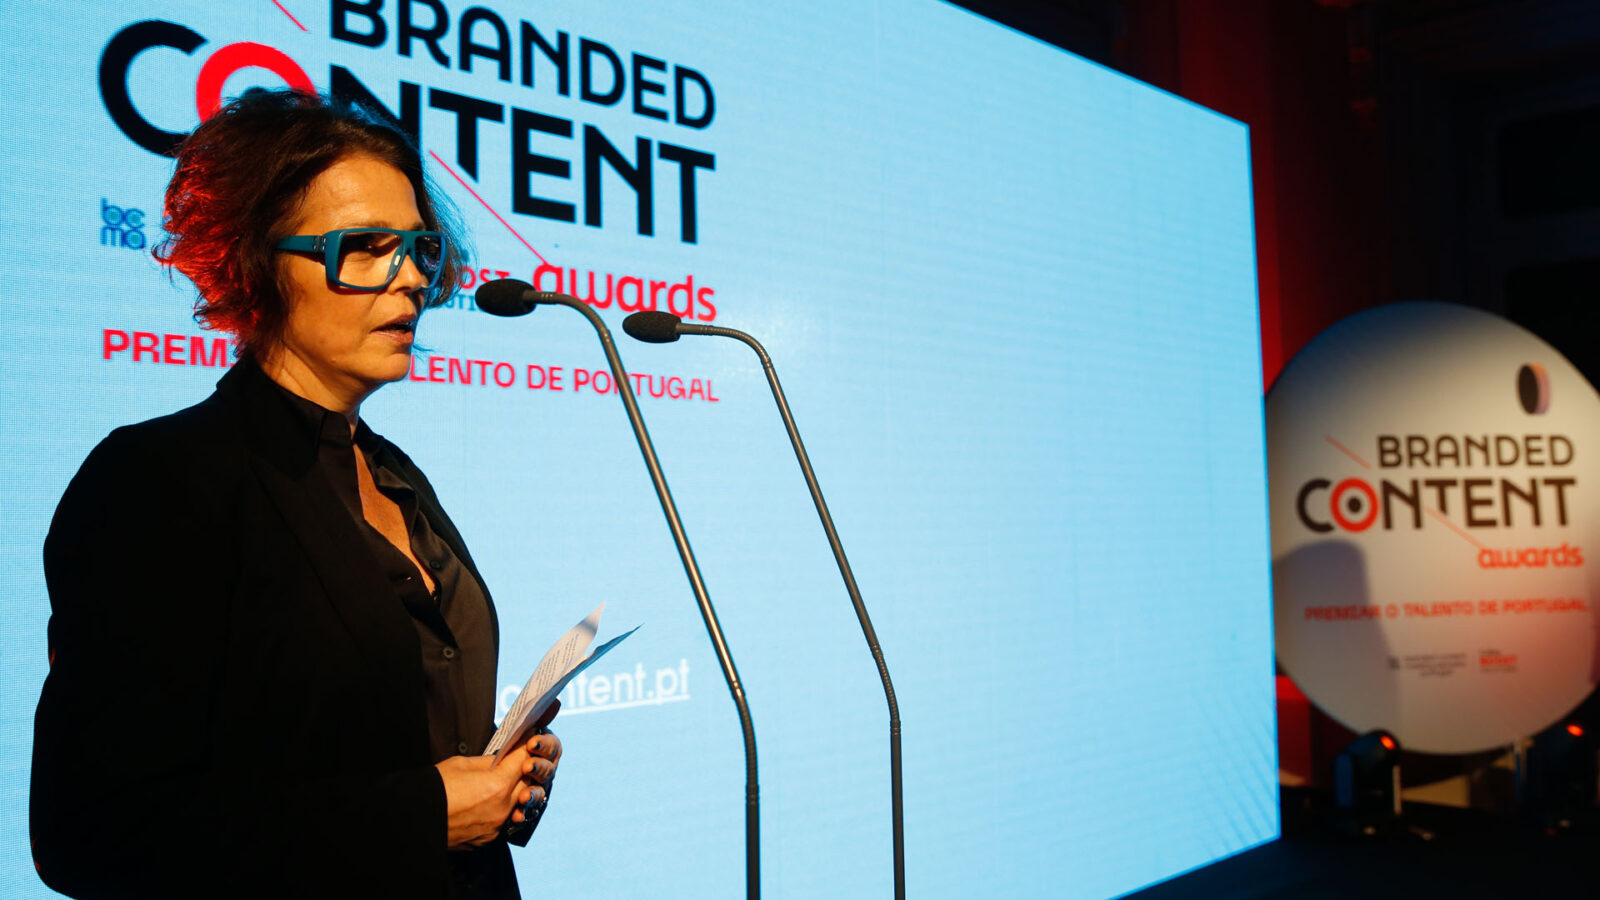 Branded Content Awards prepara 2ª edição